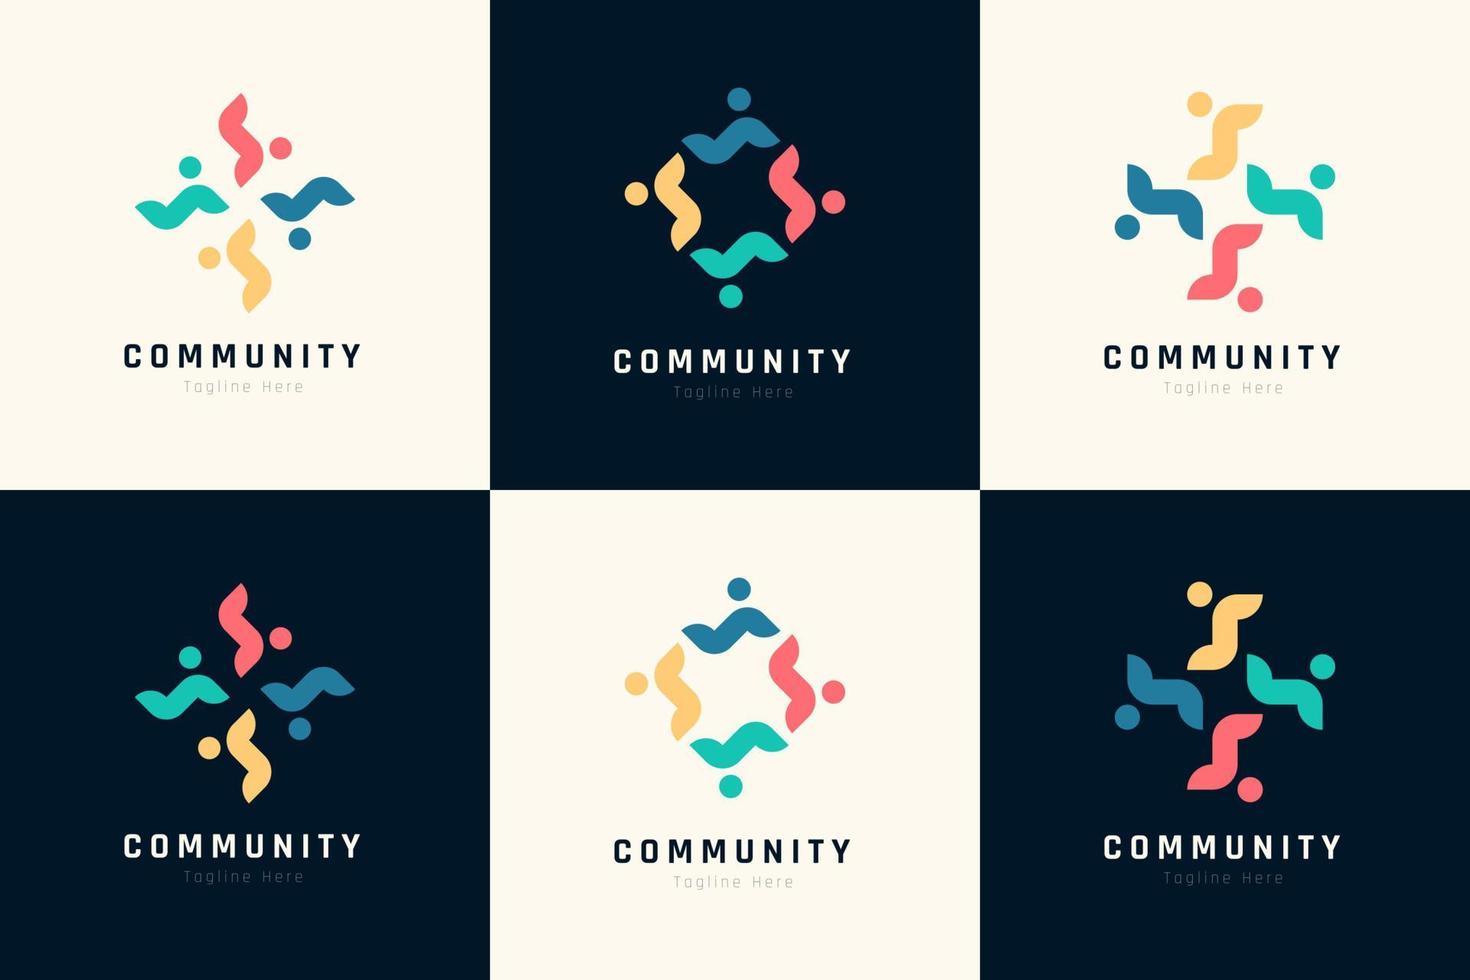 kreativ bunt von Menschen und Gemeinschaft Logo Design zum Teams oder Gruppen Sammlung vektor